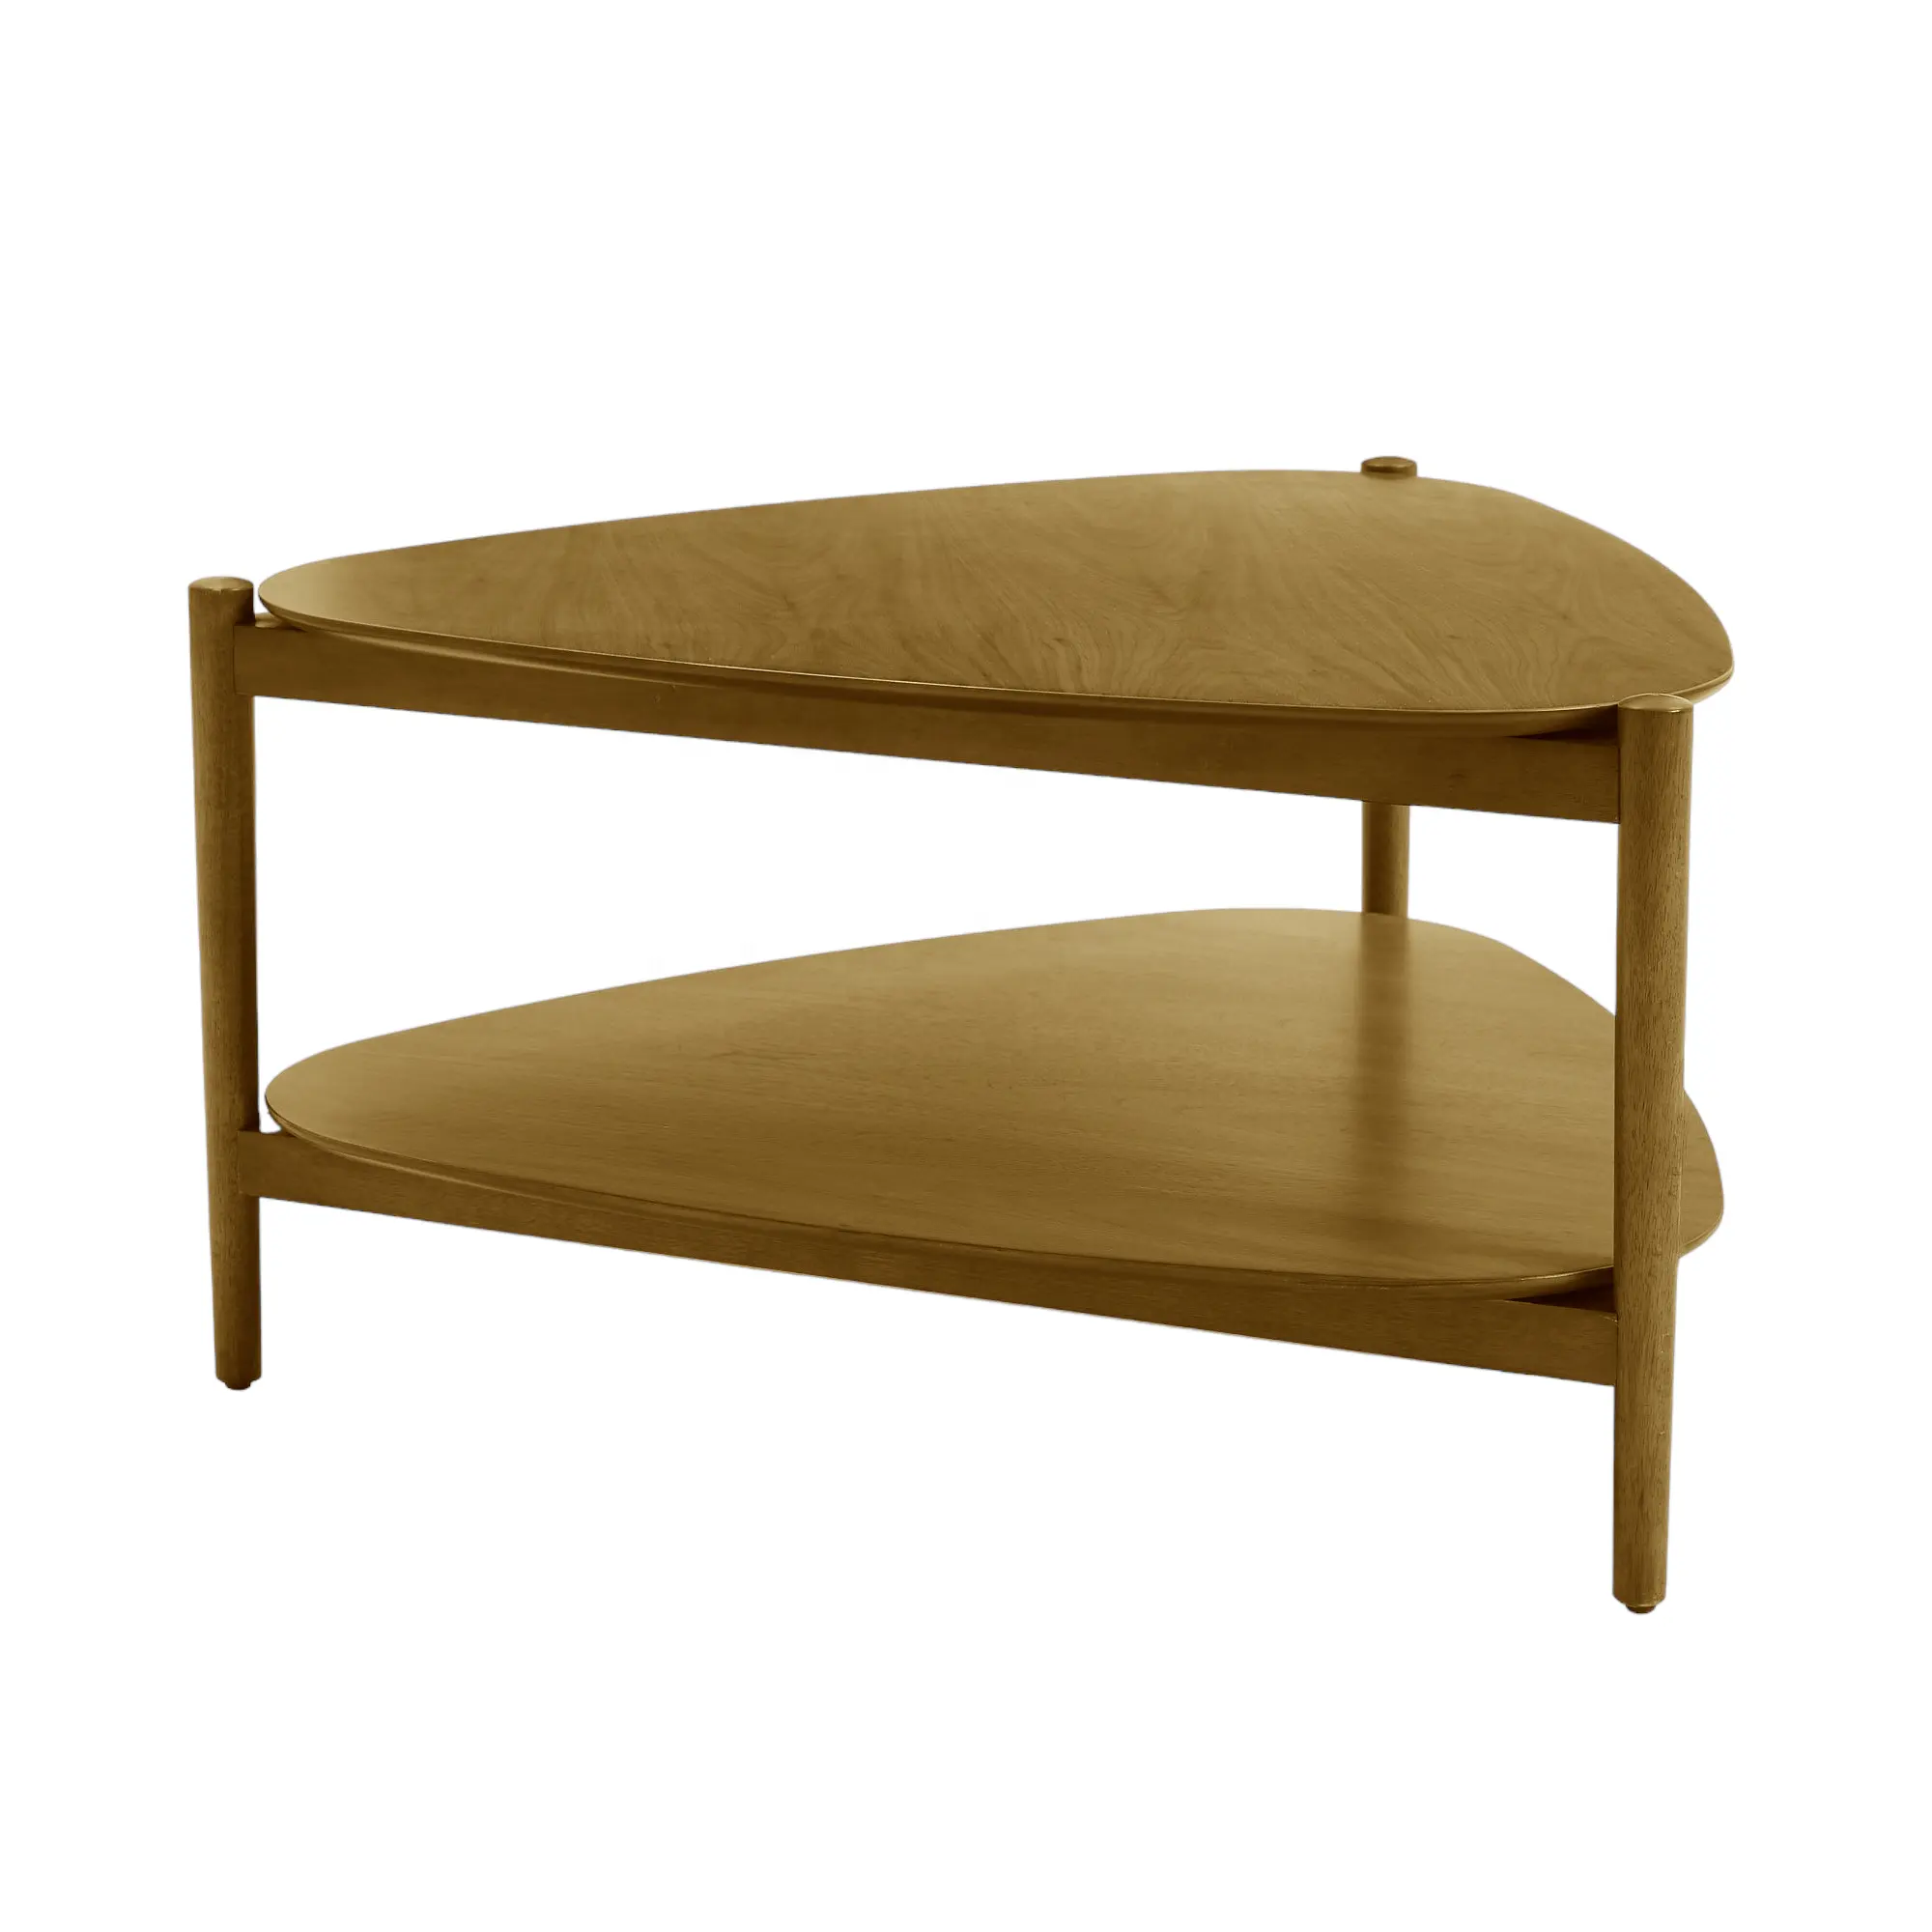 Tavolino moderno a treppiede Design semplice in legno massello di Teak